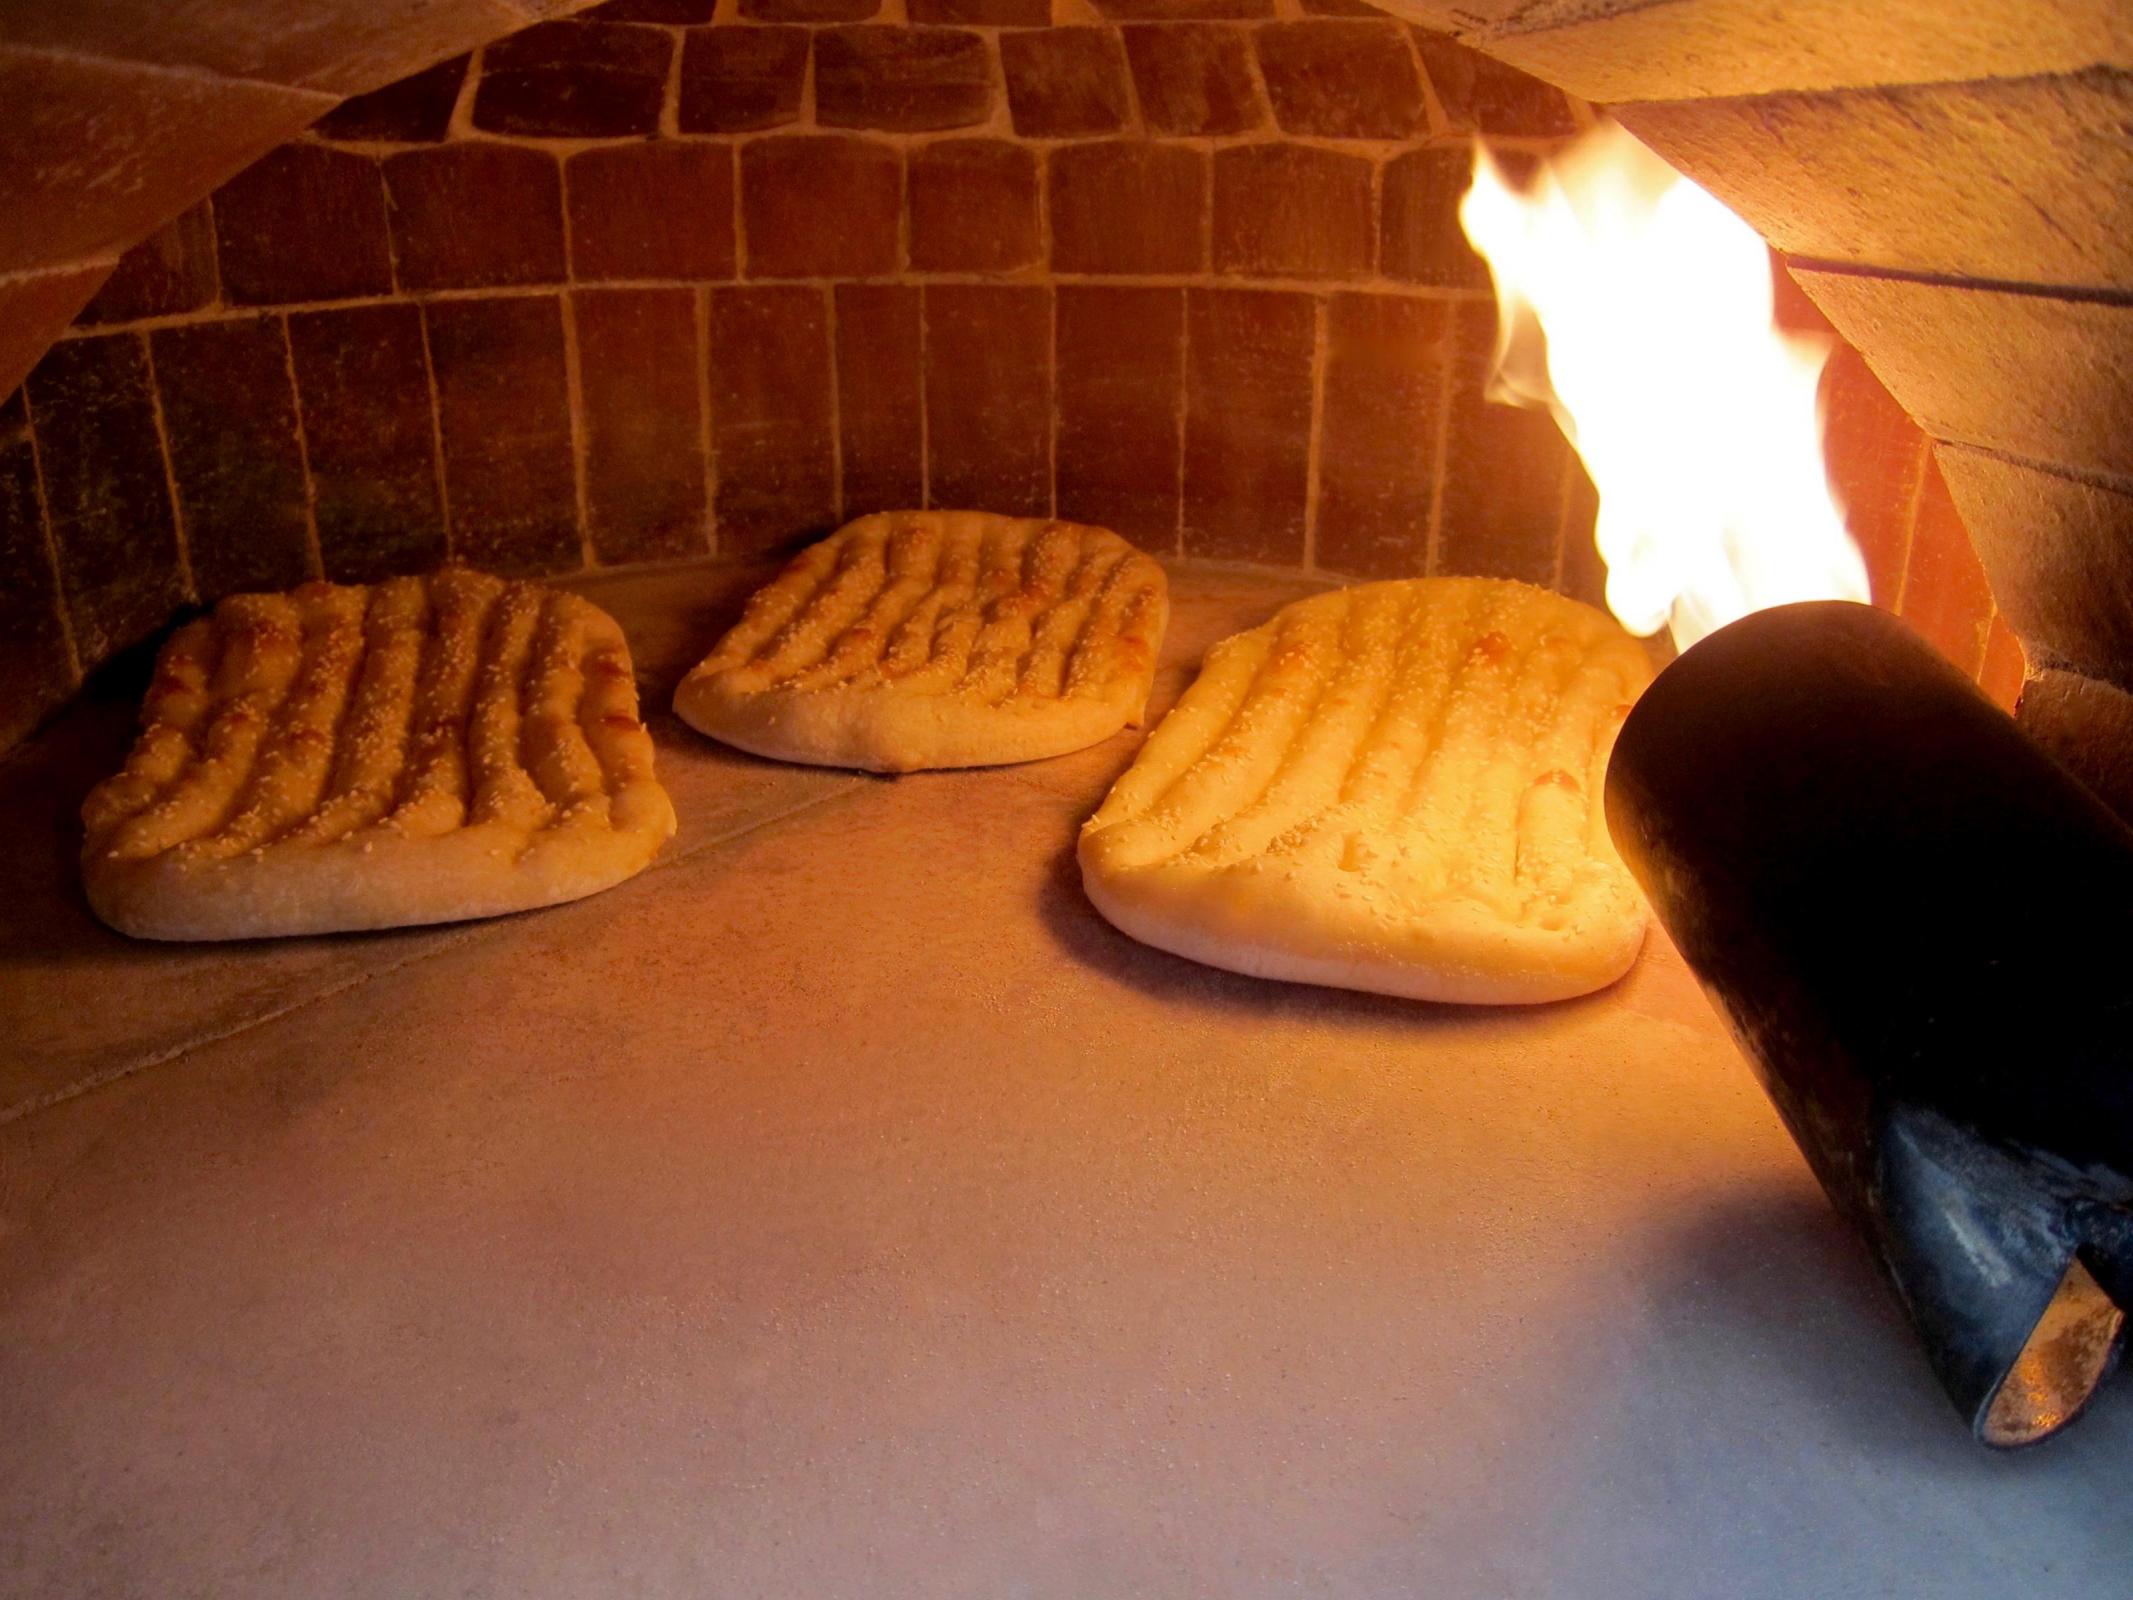 Baking bread in clay oven  BakingTanoori bread in isfahan 